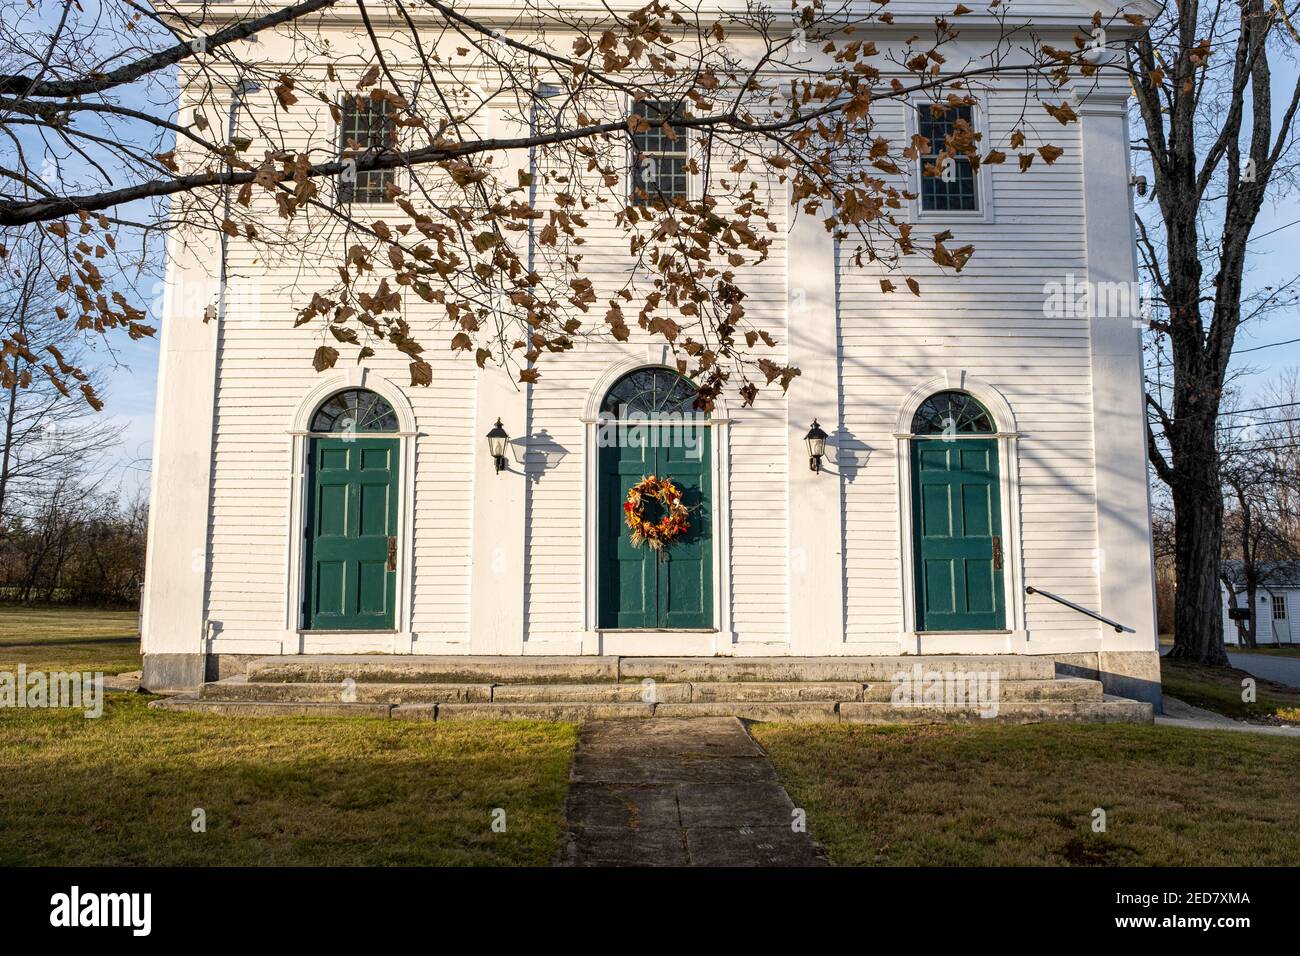 Eglise congrégationale universaliste, Eglise communautaire de North Orange et Tully, Massachusetts Banque D'Images